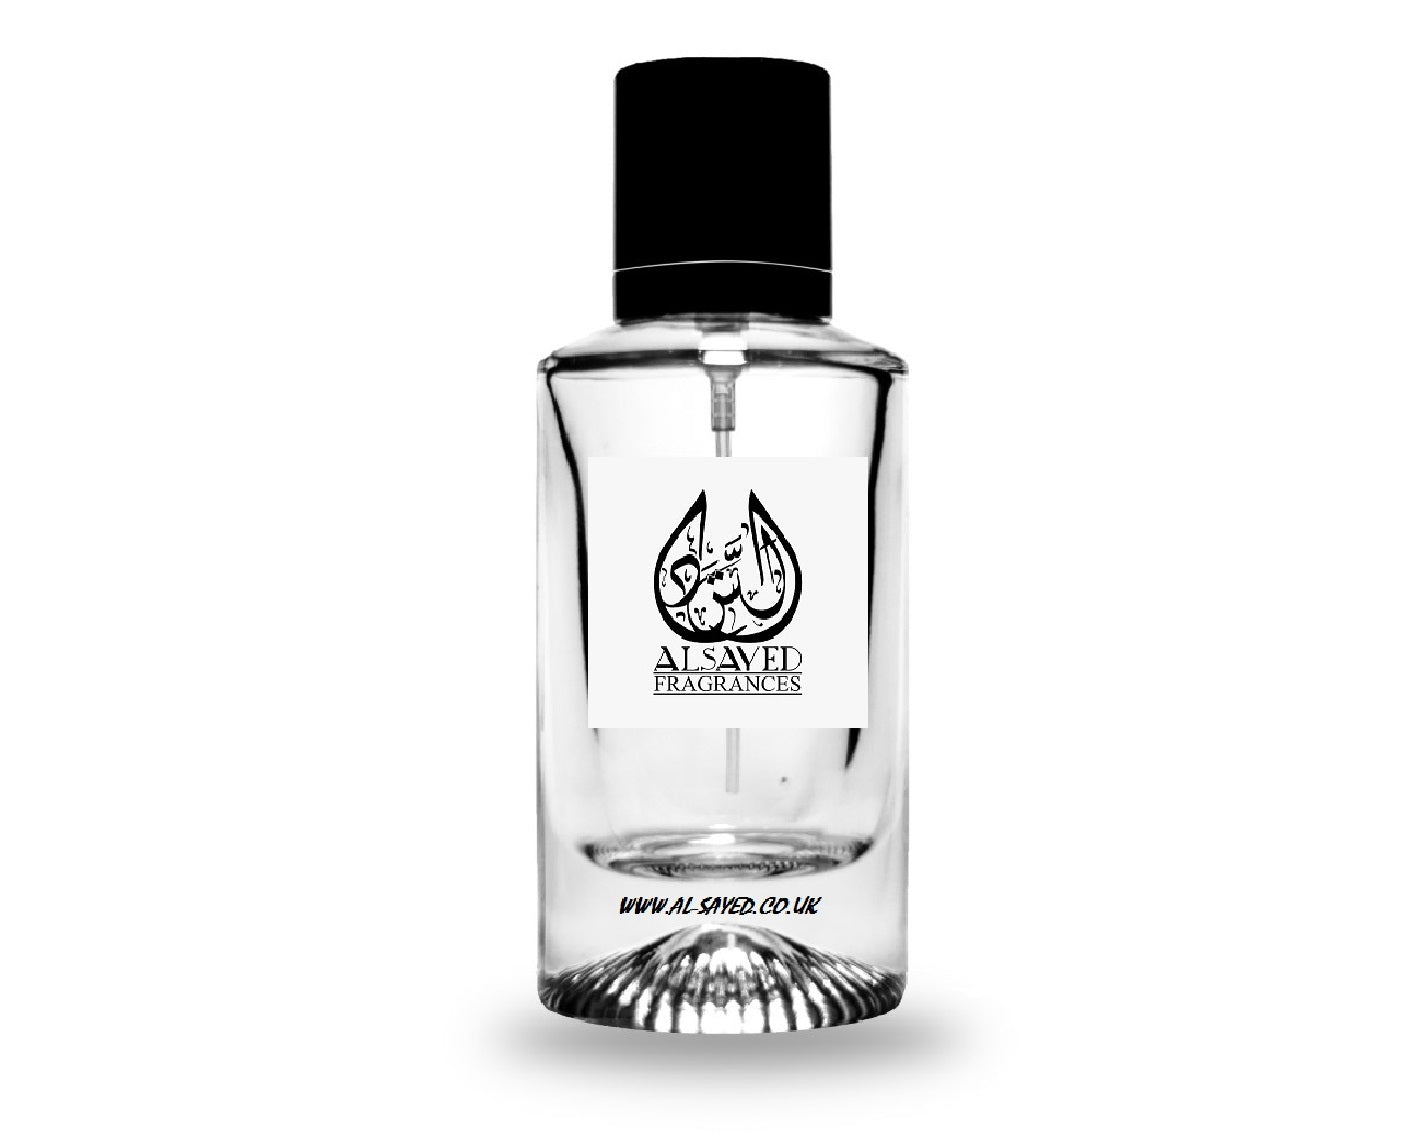 Fleur Du Désert - Louis Vuitton ®  Louis vuitton fragrance, Perfume, Oud  fragrance